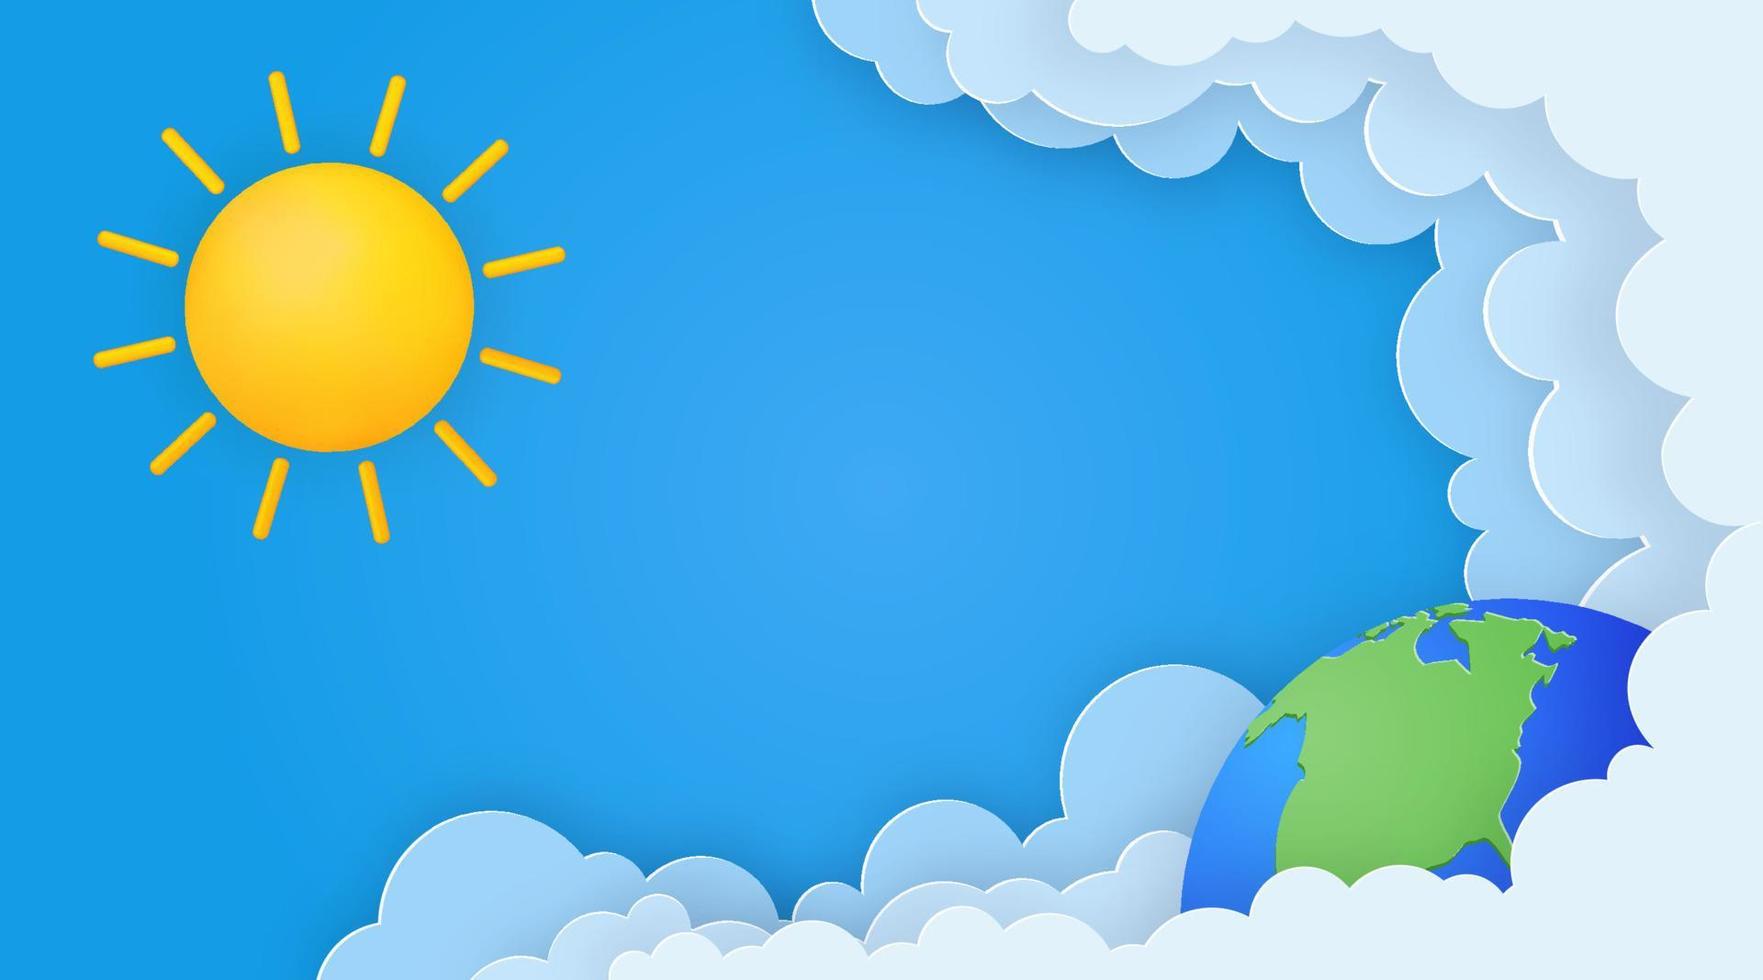 süß Sommer- Banner mit Sonne, Papier Wolken und Erde Planet auf Blau Himmel Hintergrund. vektor